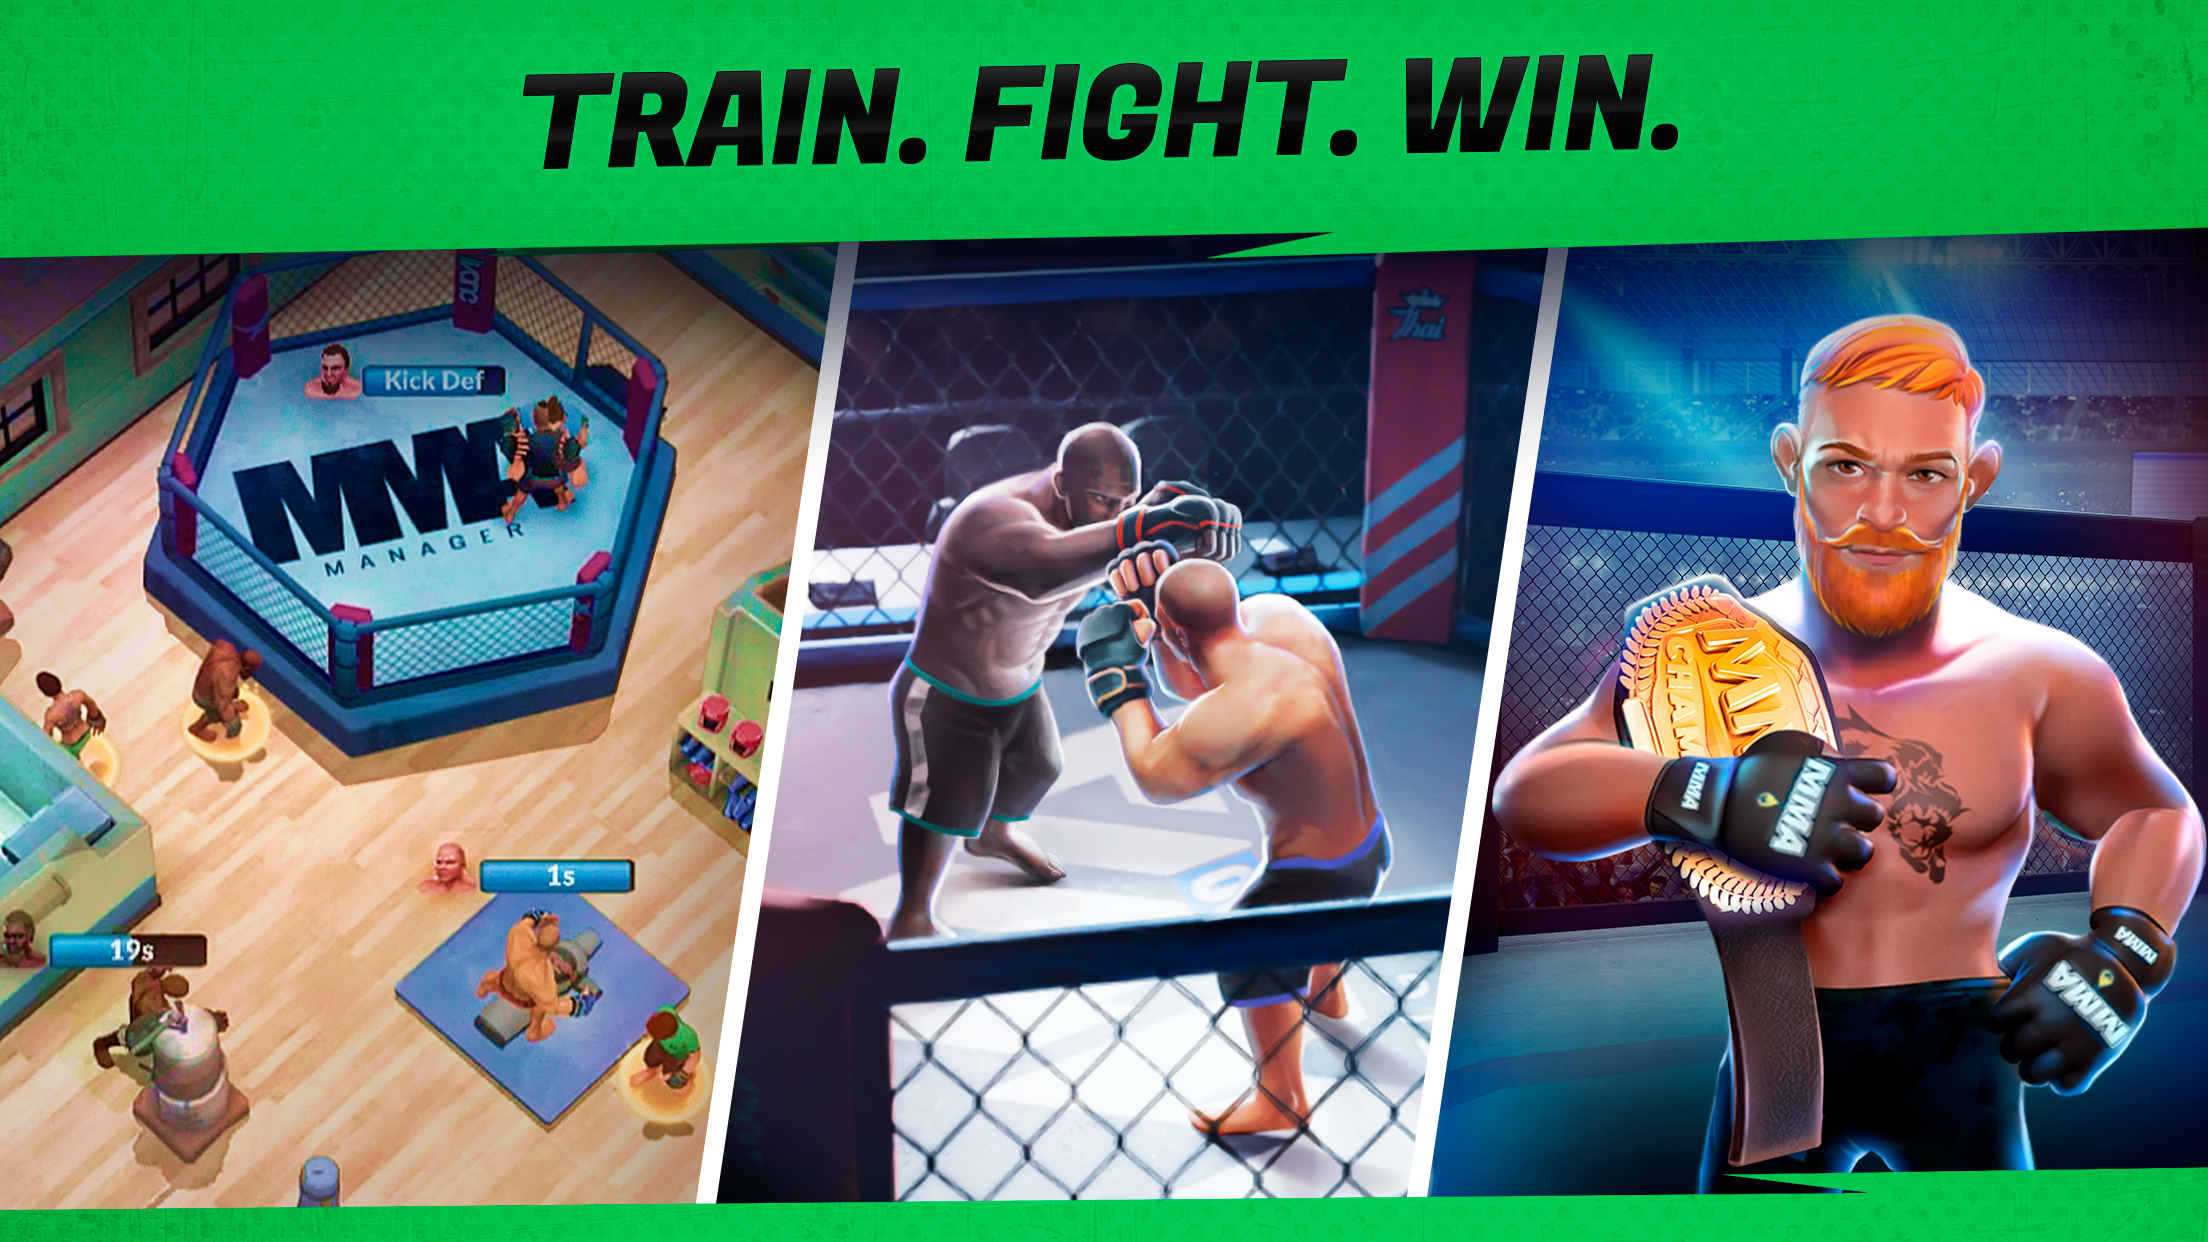 Train fight win